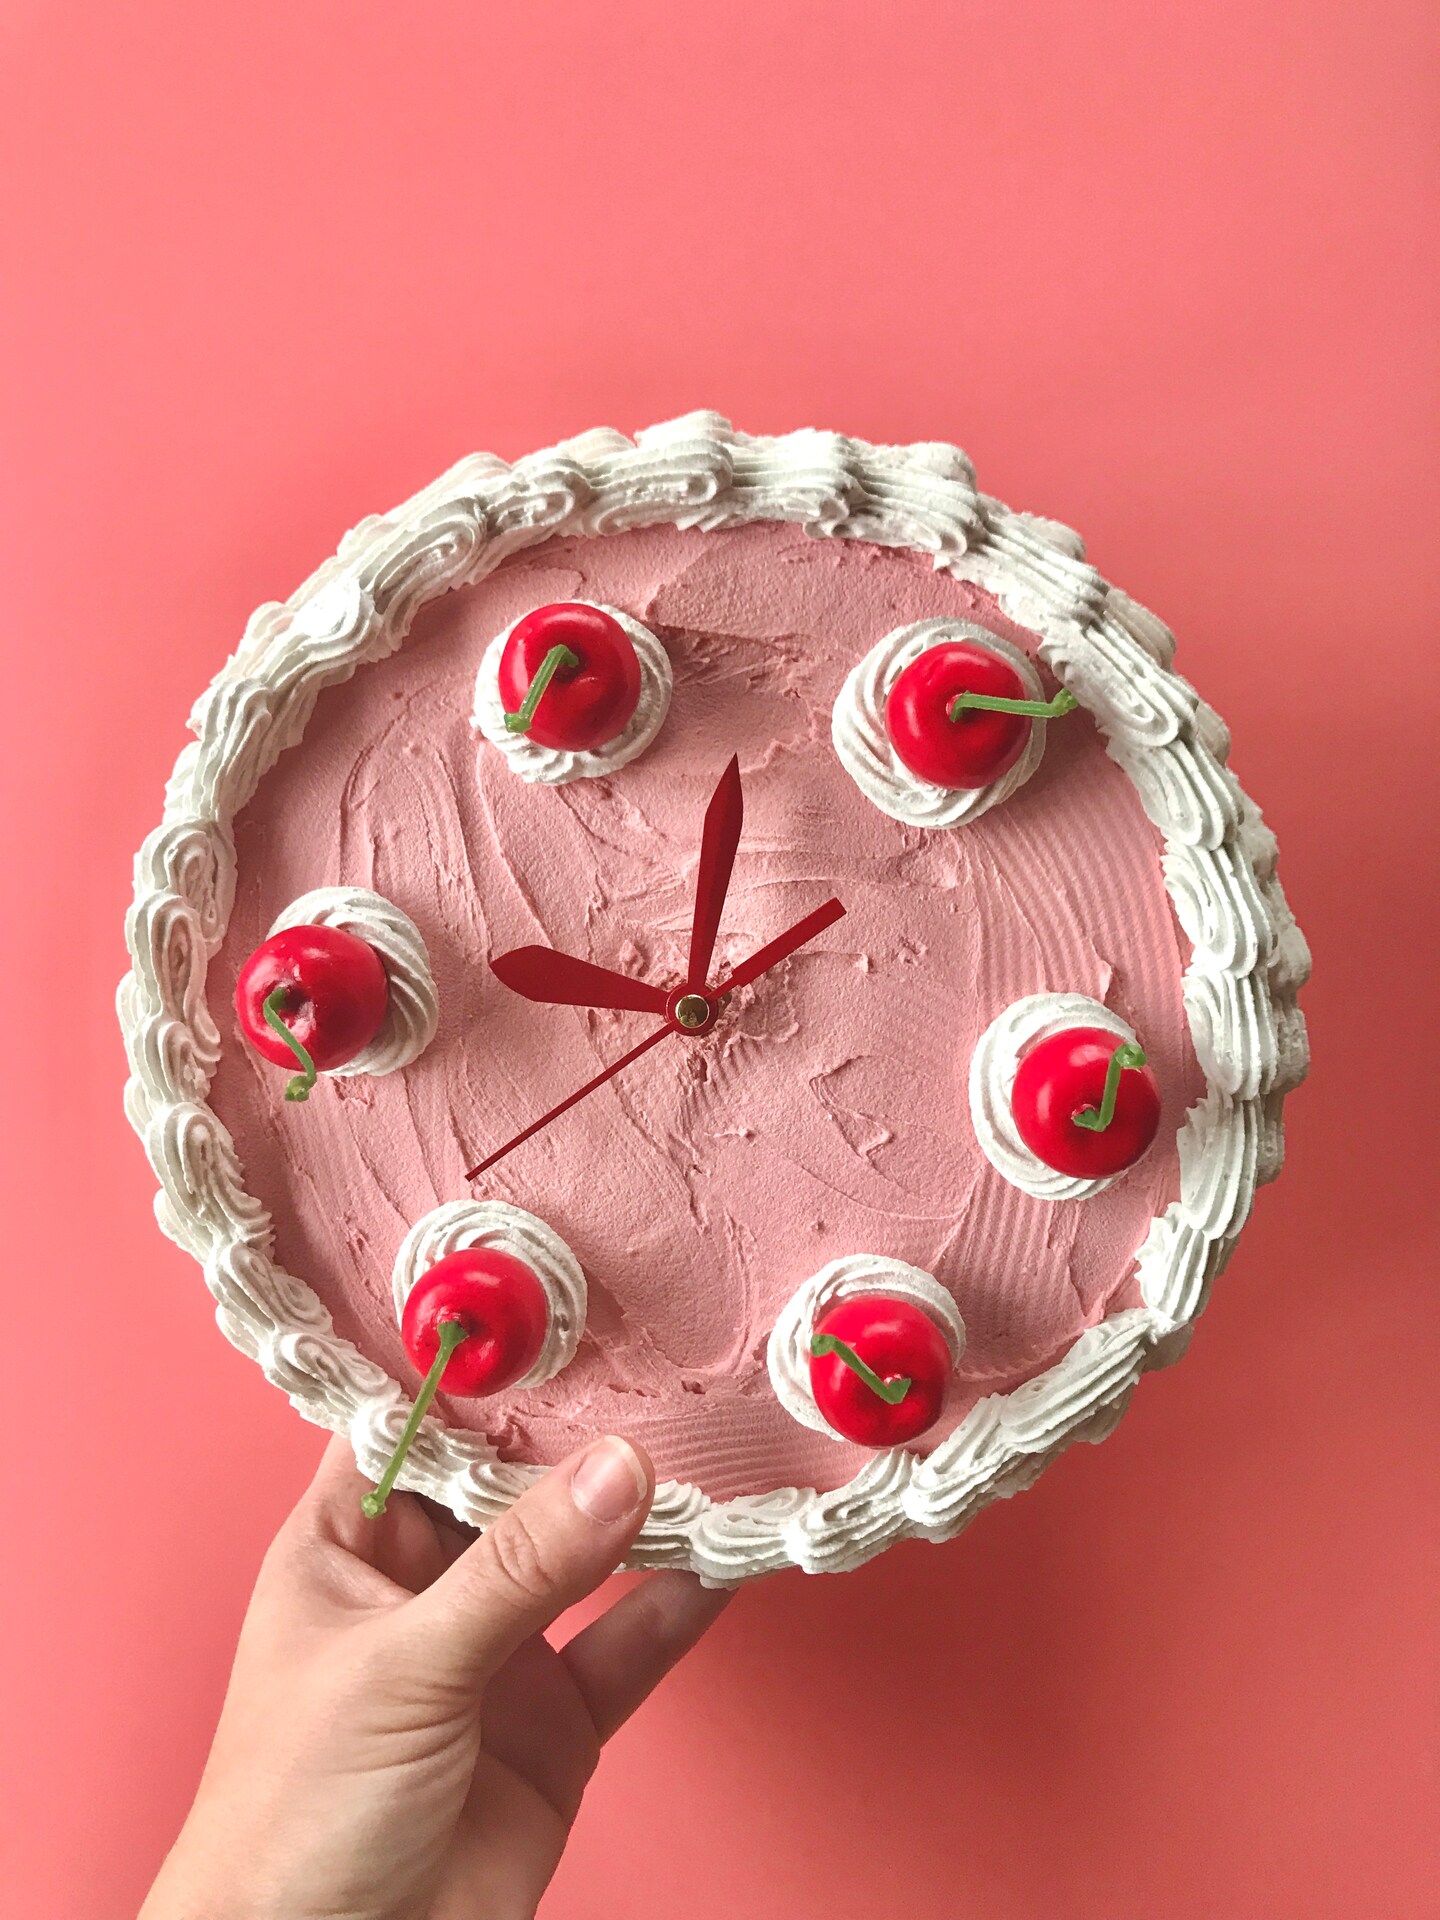 Clock 4th Birthday - Decorated Cake by Alena - CakesDecor